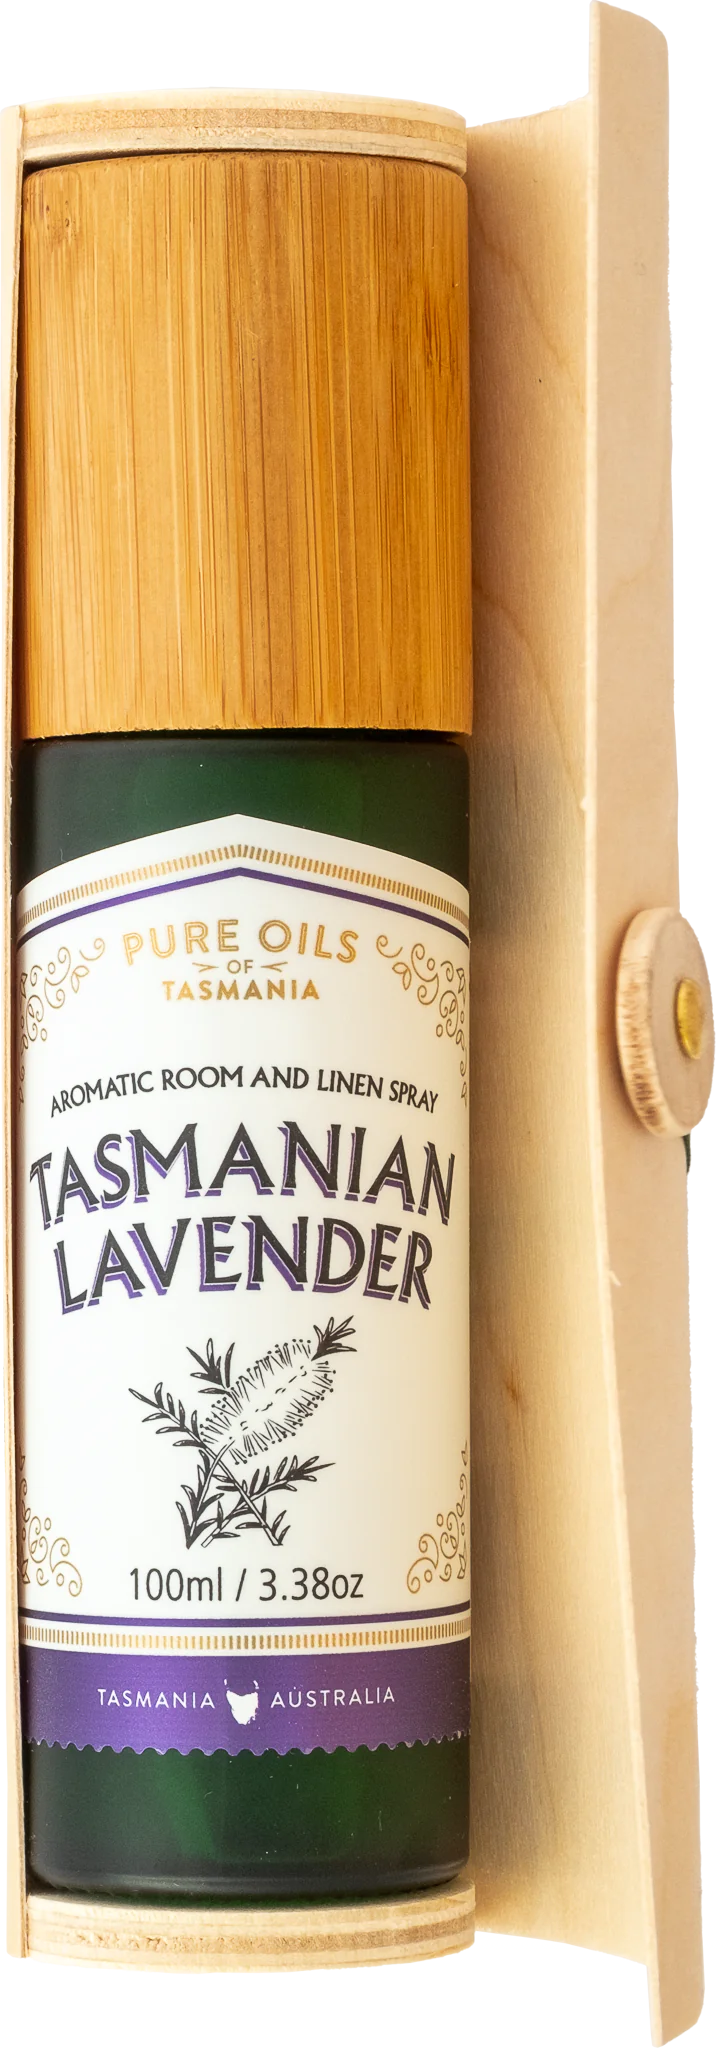 Tasmanian Lavender Aromatic Room & Linen Spray - Pure Oils of Tasmania Body pure oils tasmania 